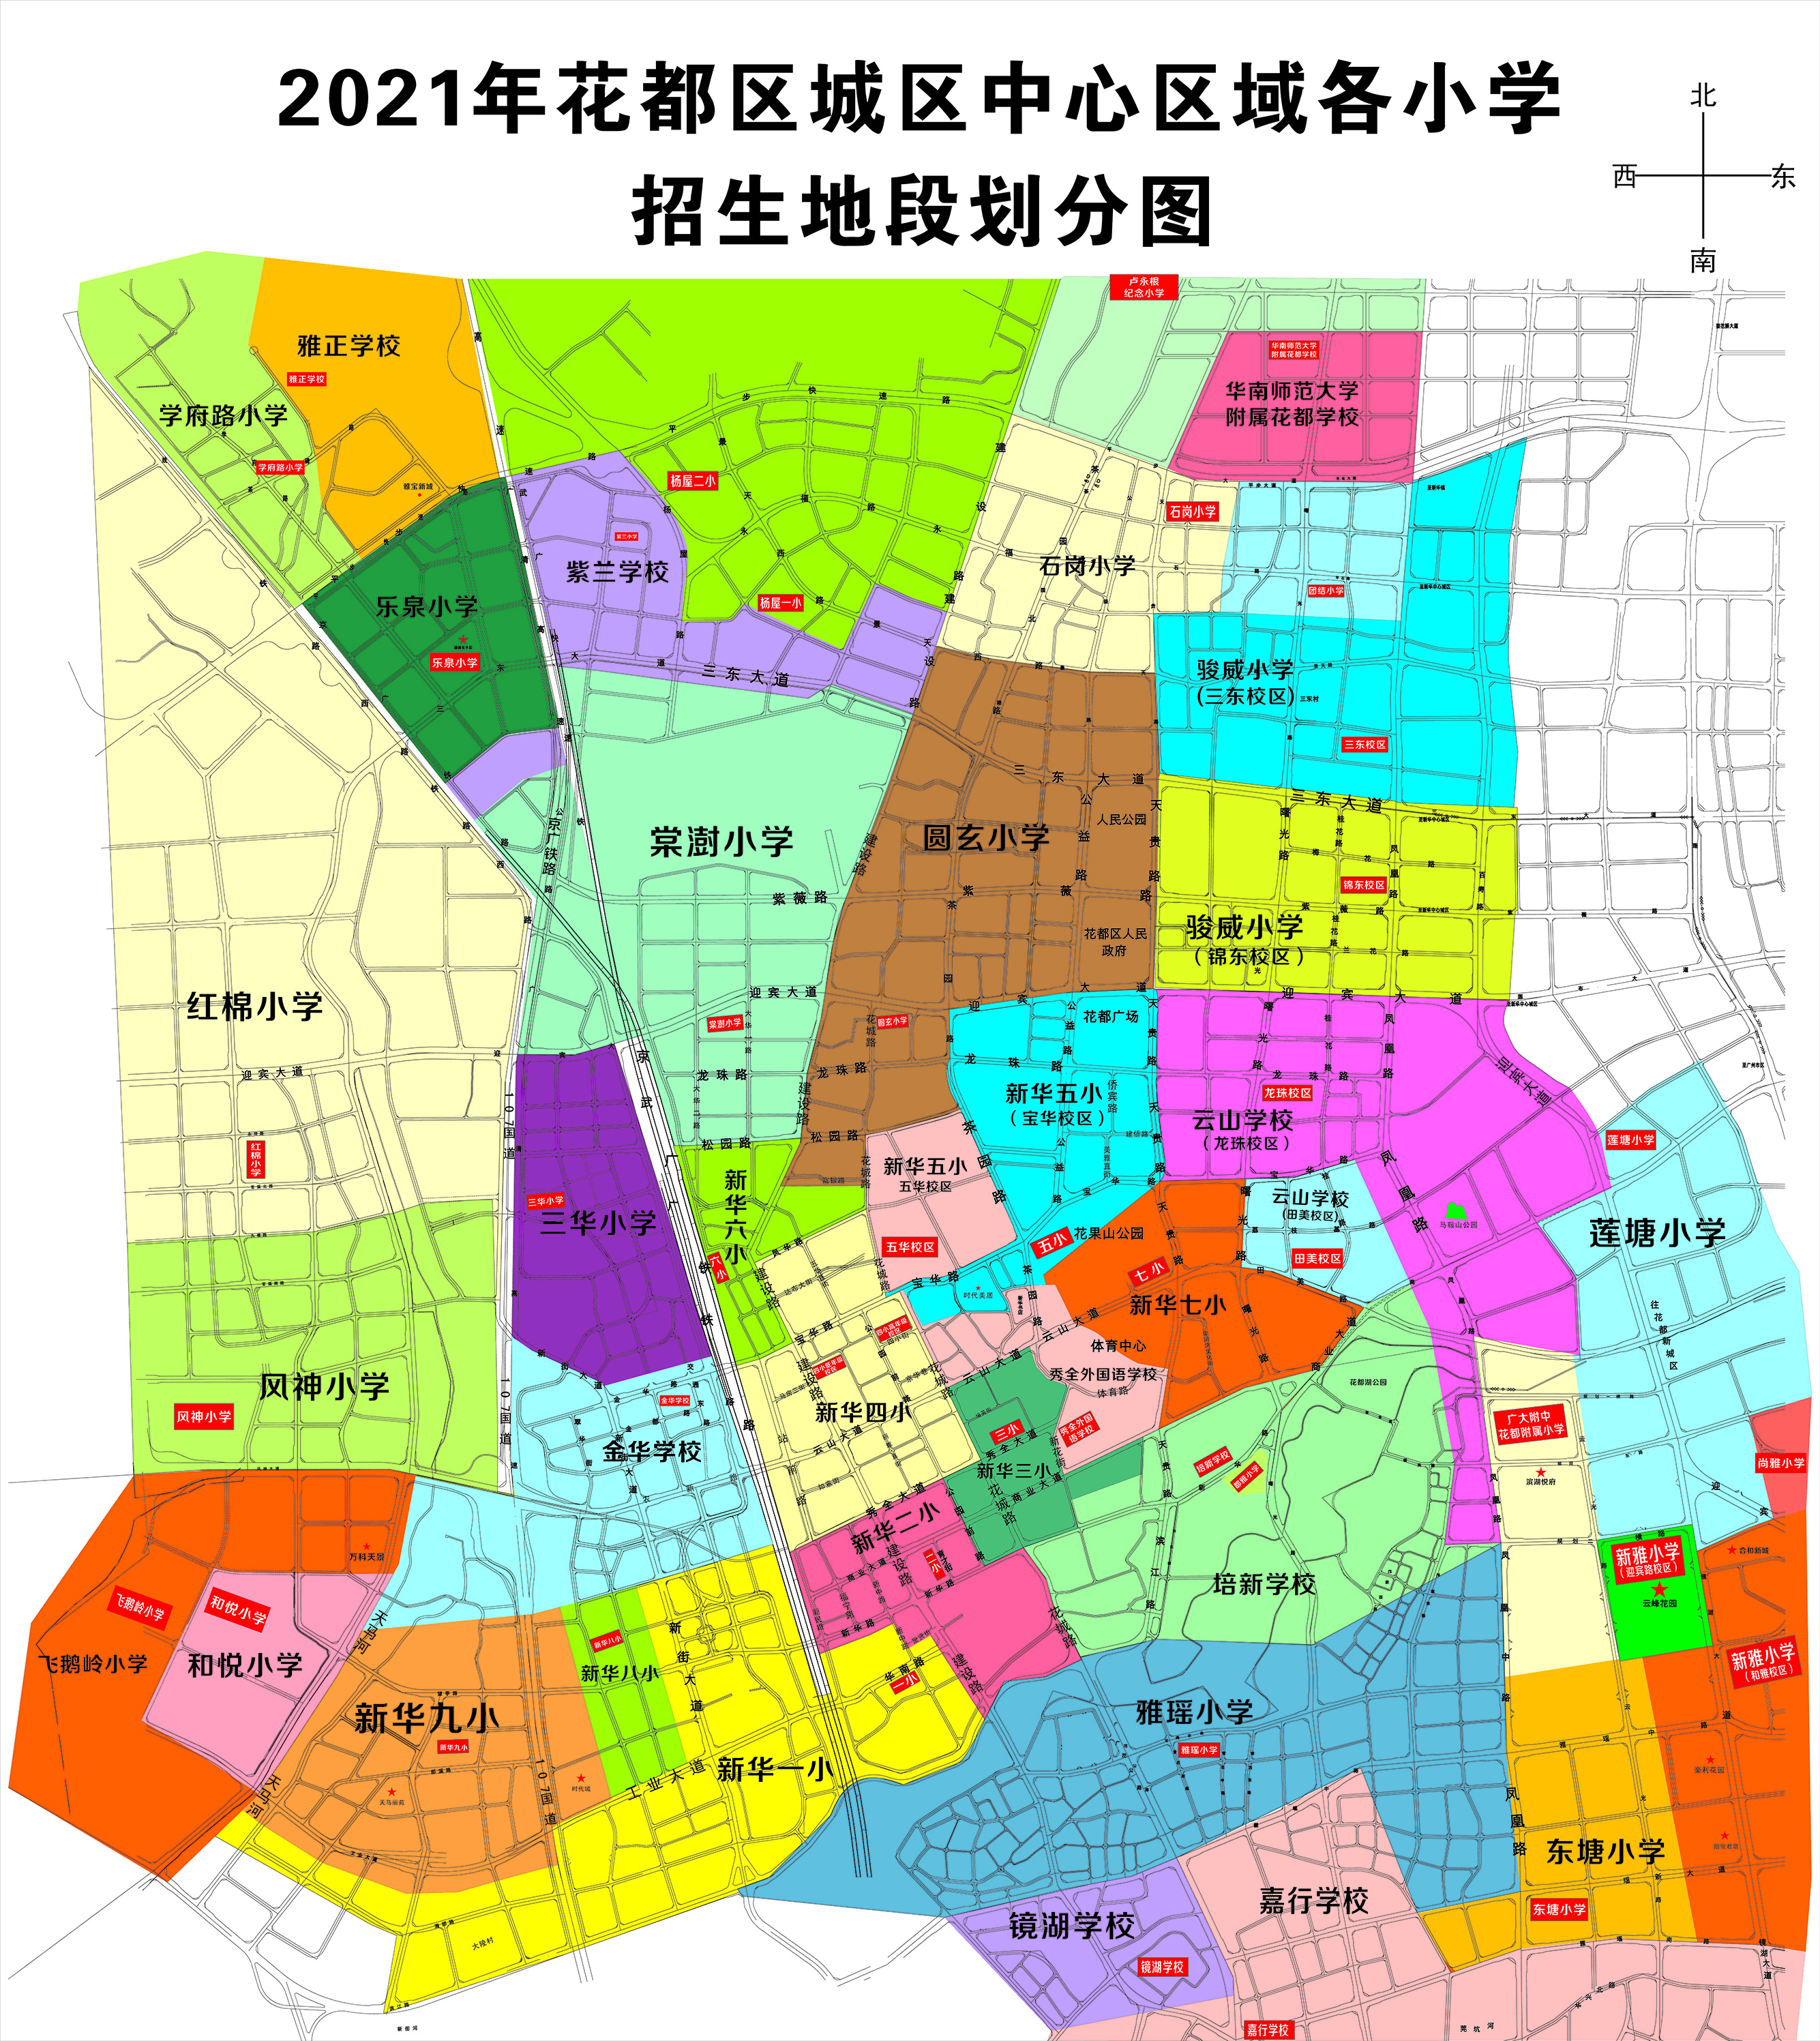 2021年花都区城区中心区域各小学招生地段划分图.jpg